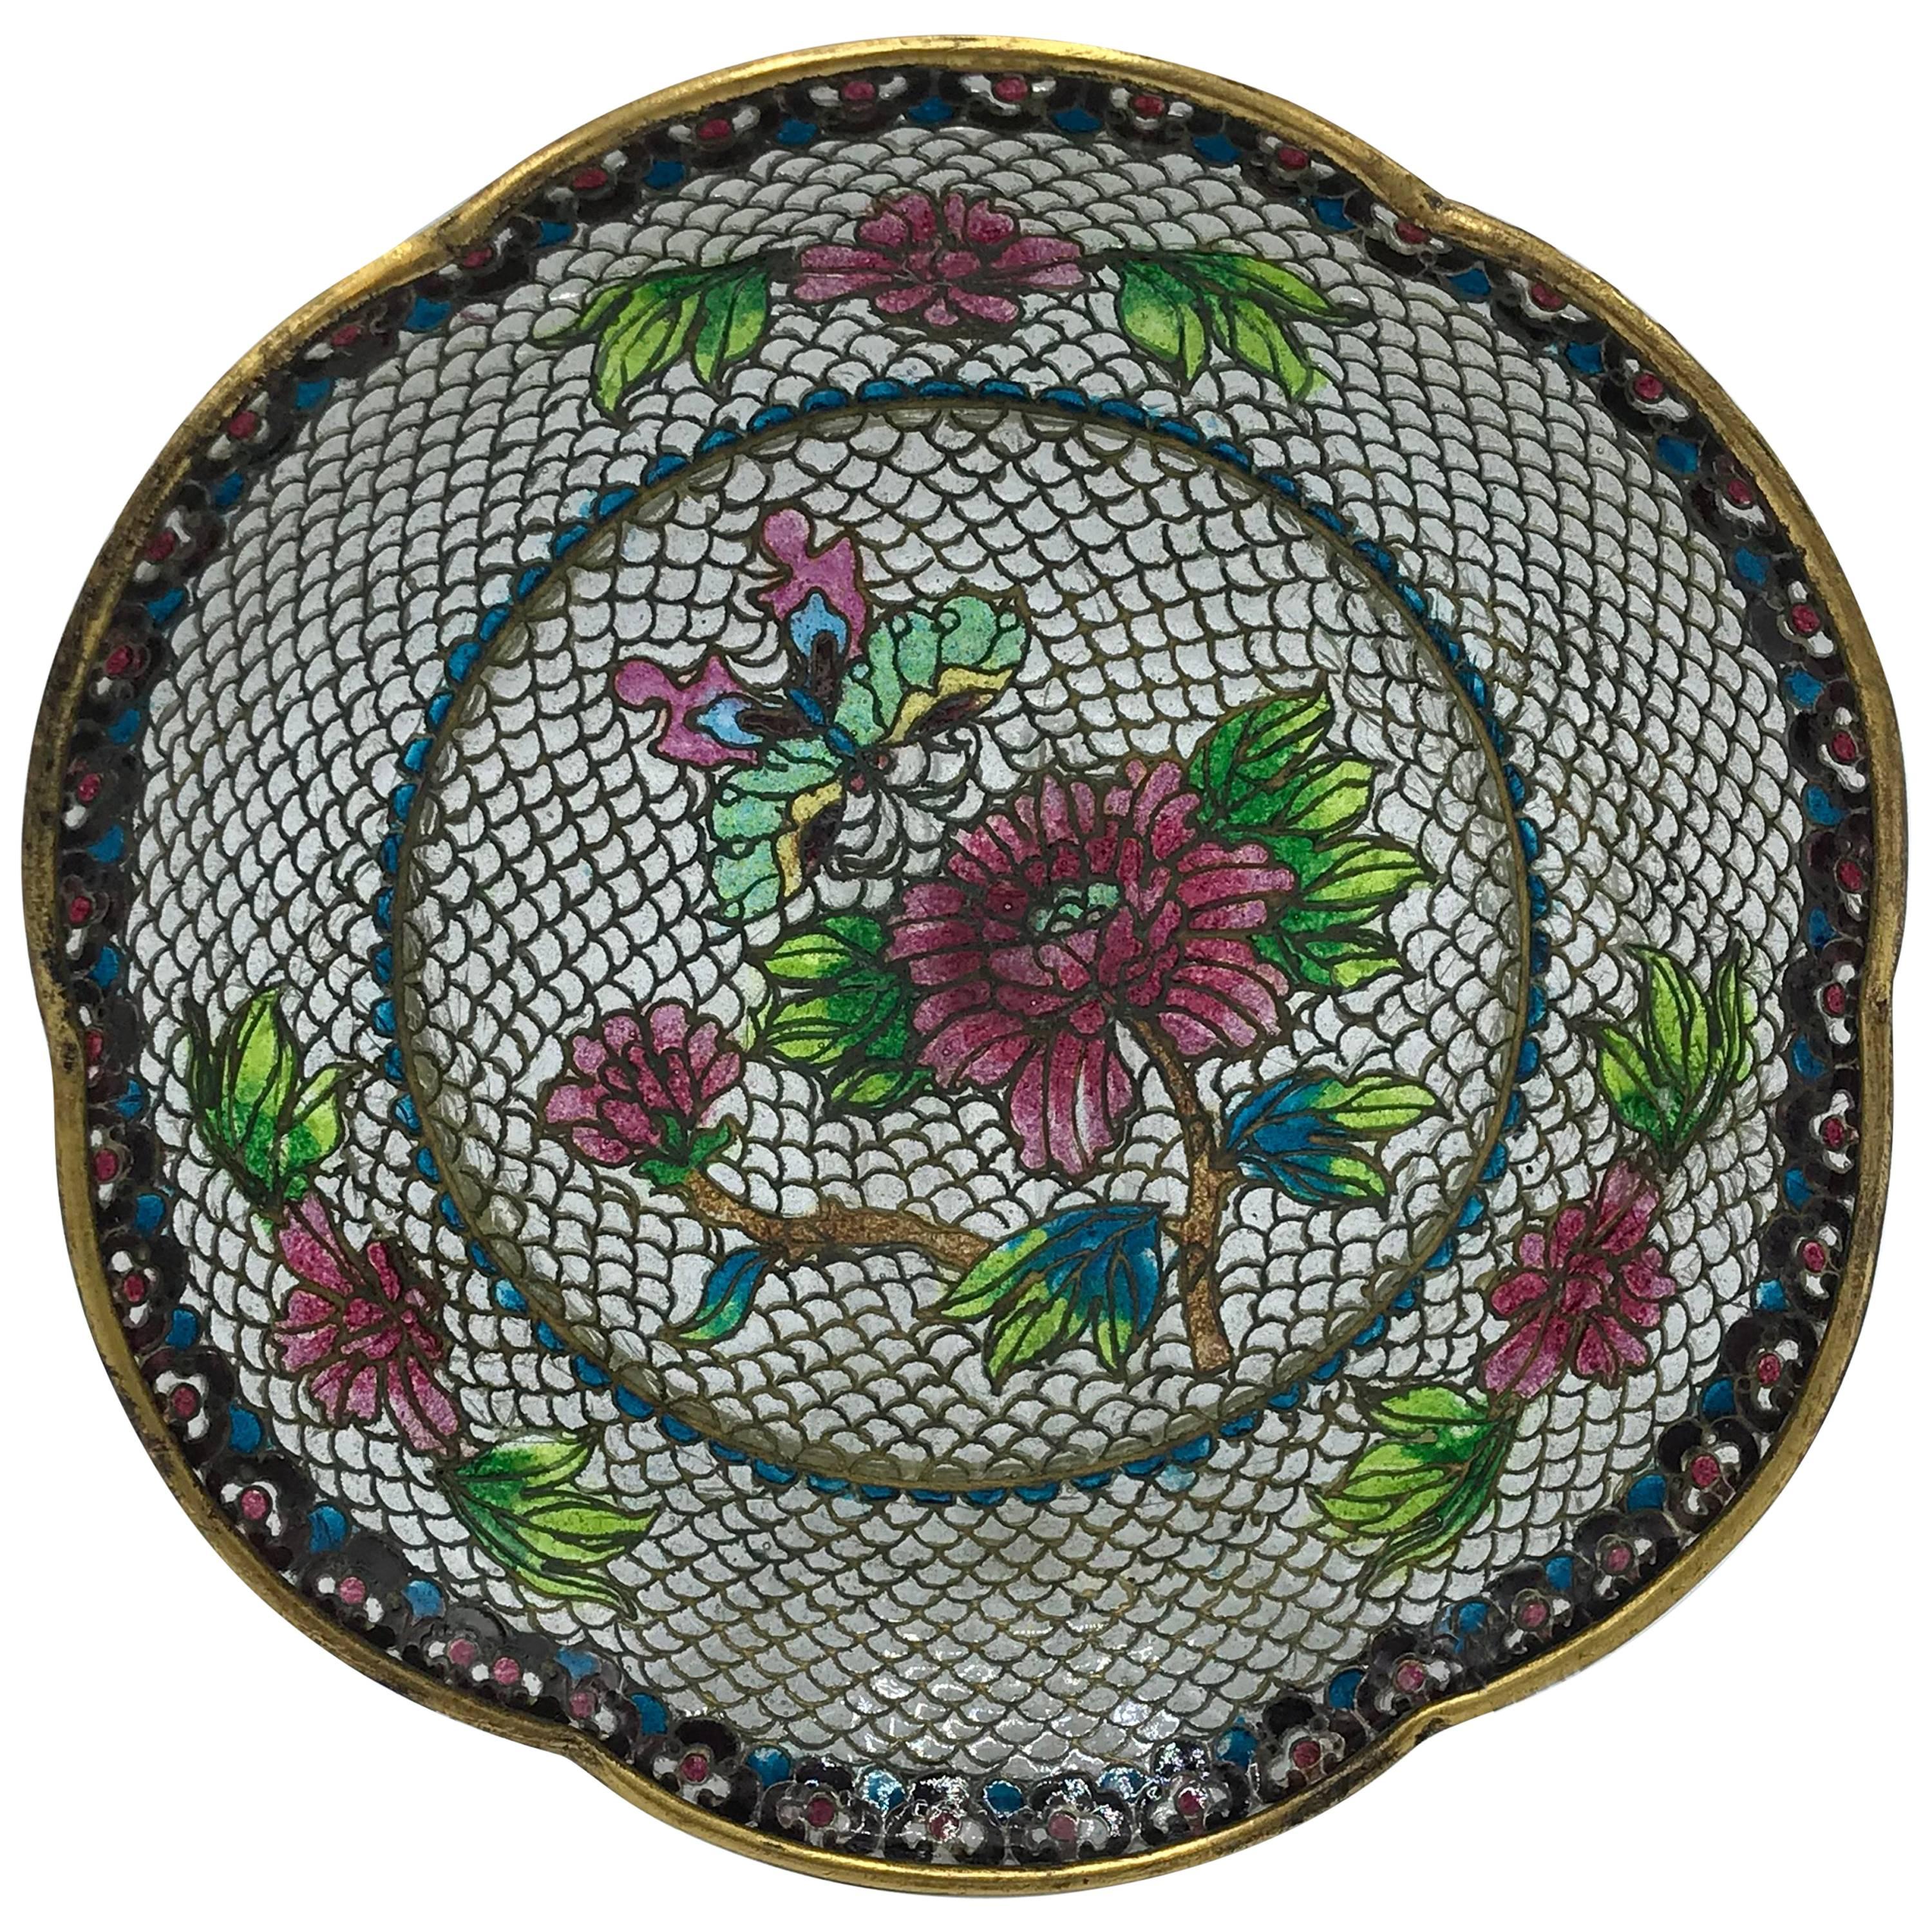 19th Century French Plique a Jour Cloisonné Mosaic Dish with Floral Motif